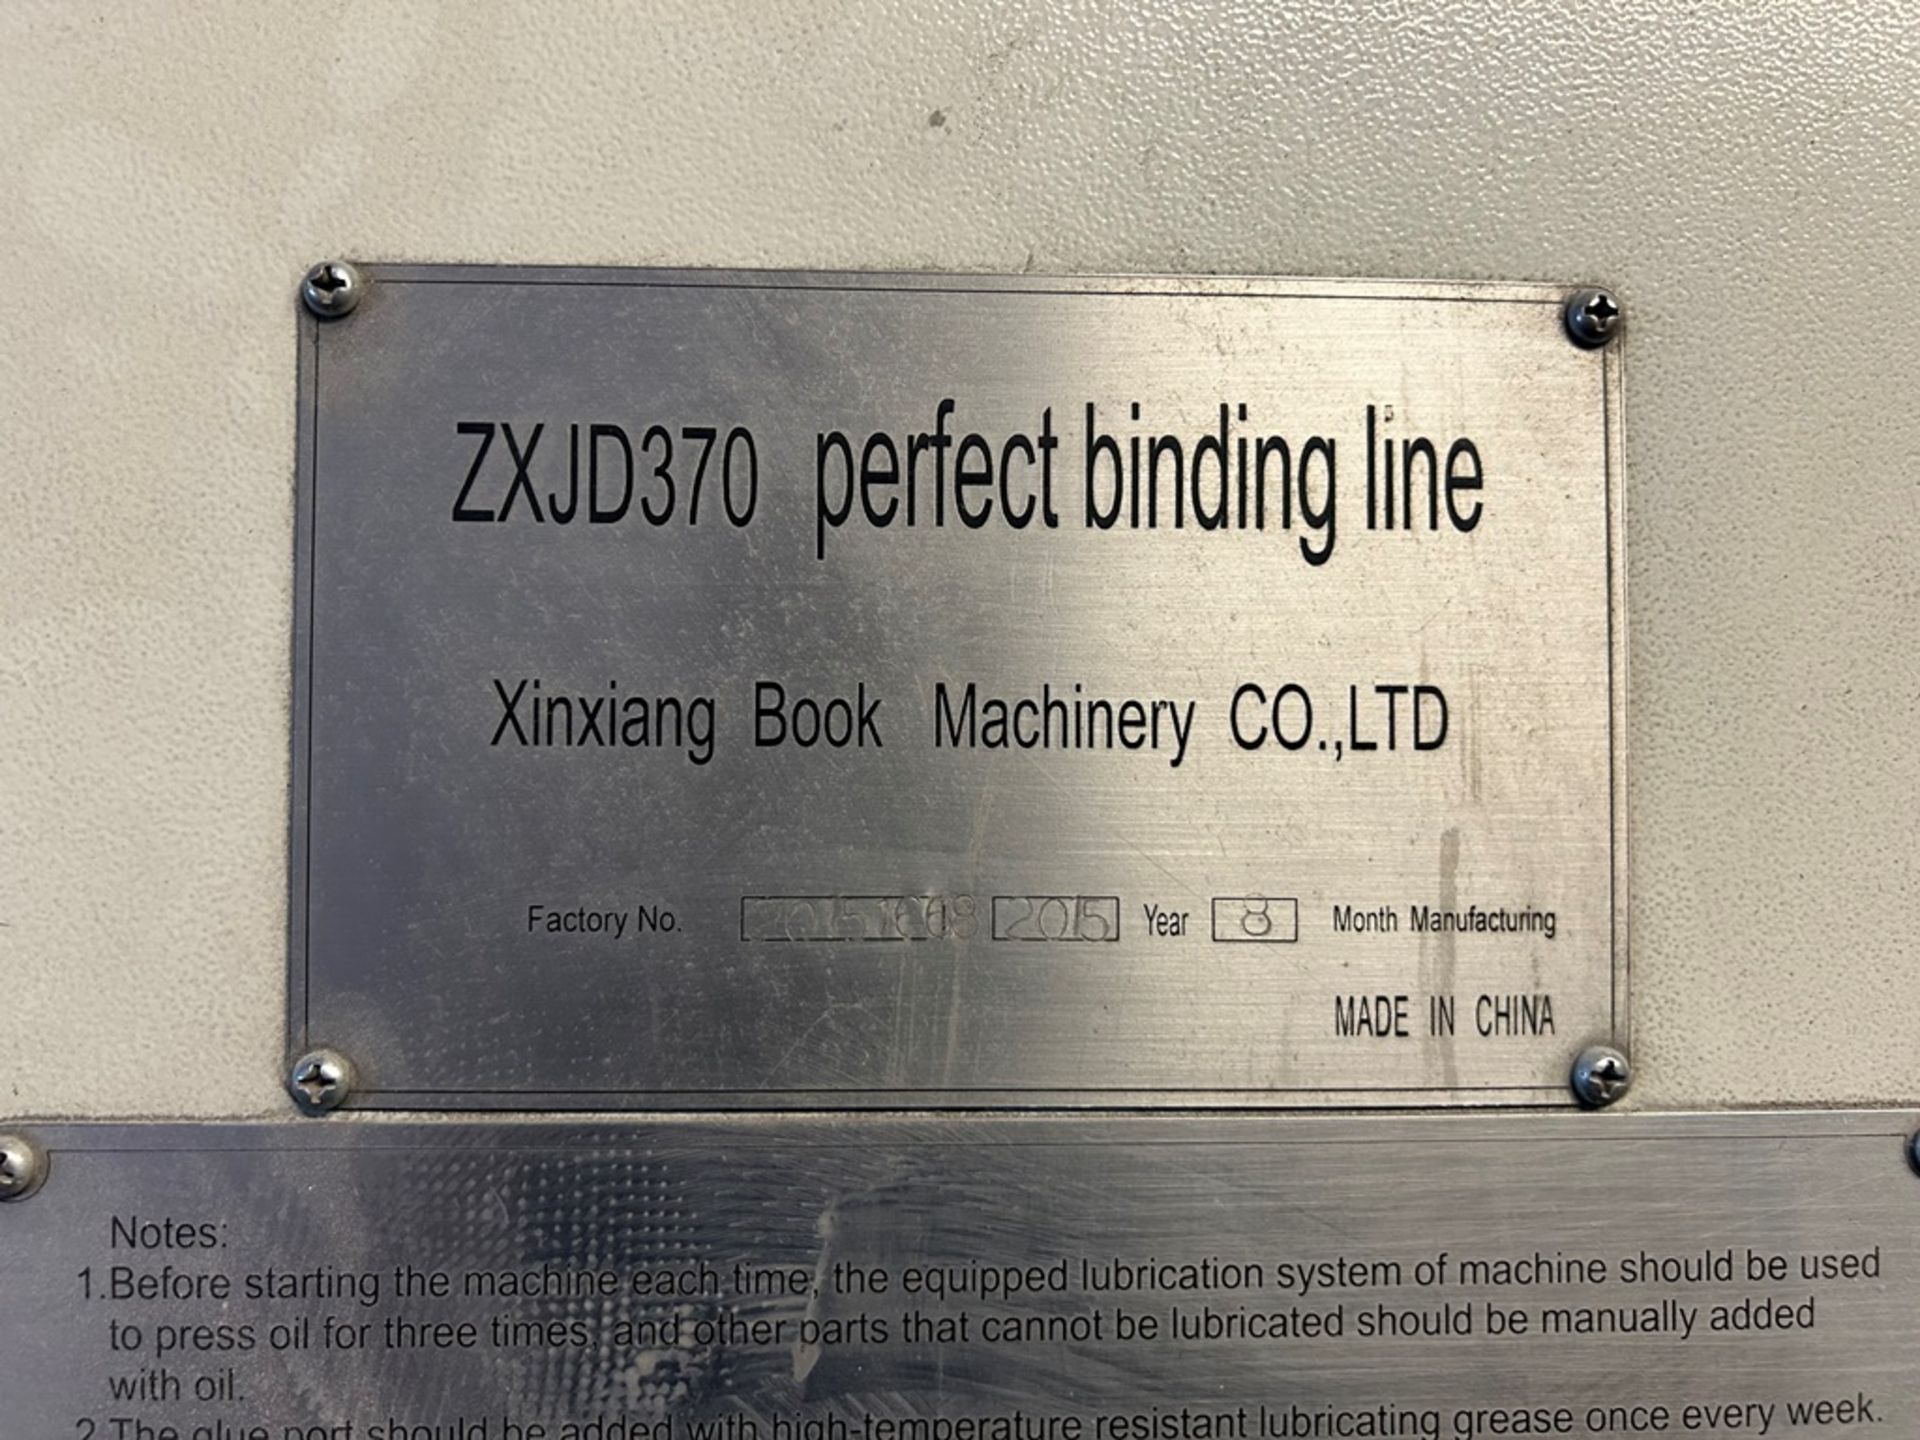 XINXIANG BOX MACHINARY 9 jaw book binding machine, Model E-BOOK ZXJD370, Serial No. 20151668, Year - Image 9 of 13